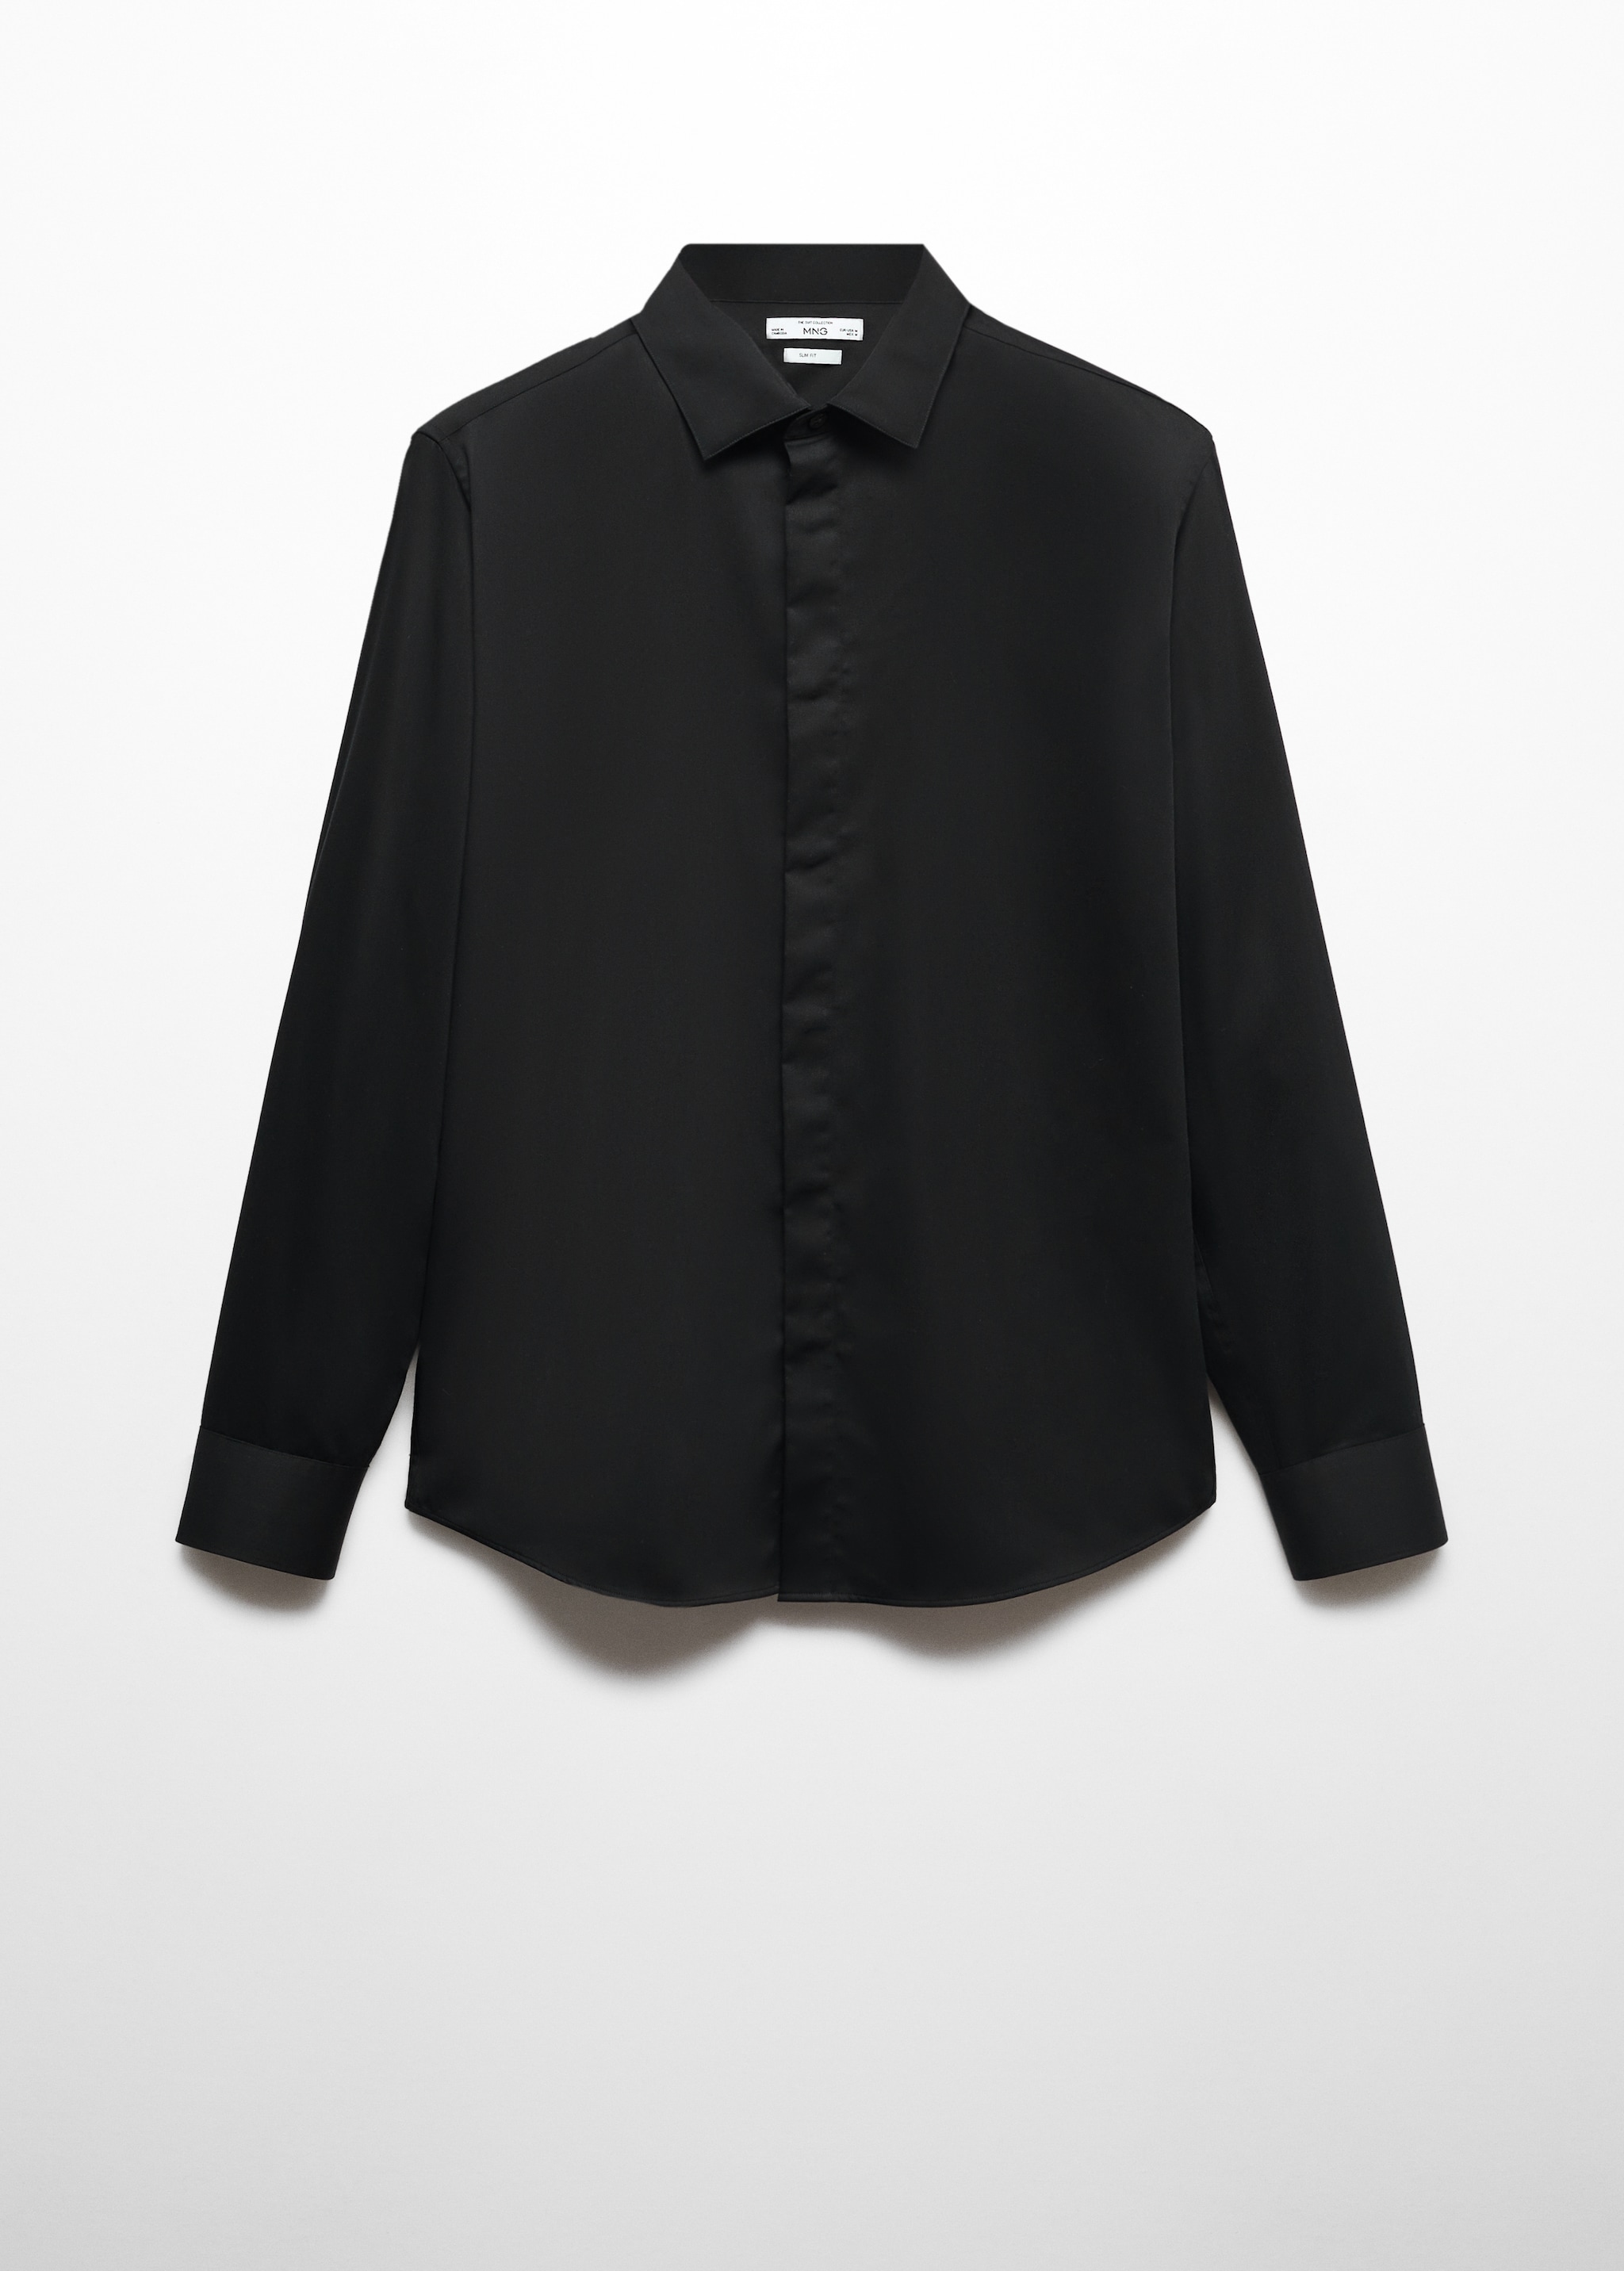 Camisa traje slim fit 100% algodón  - Artículo sin modelo